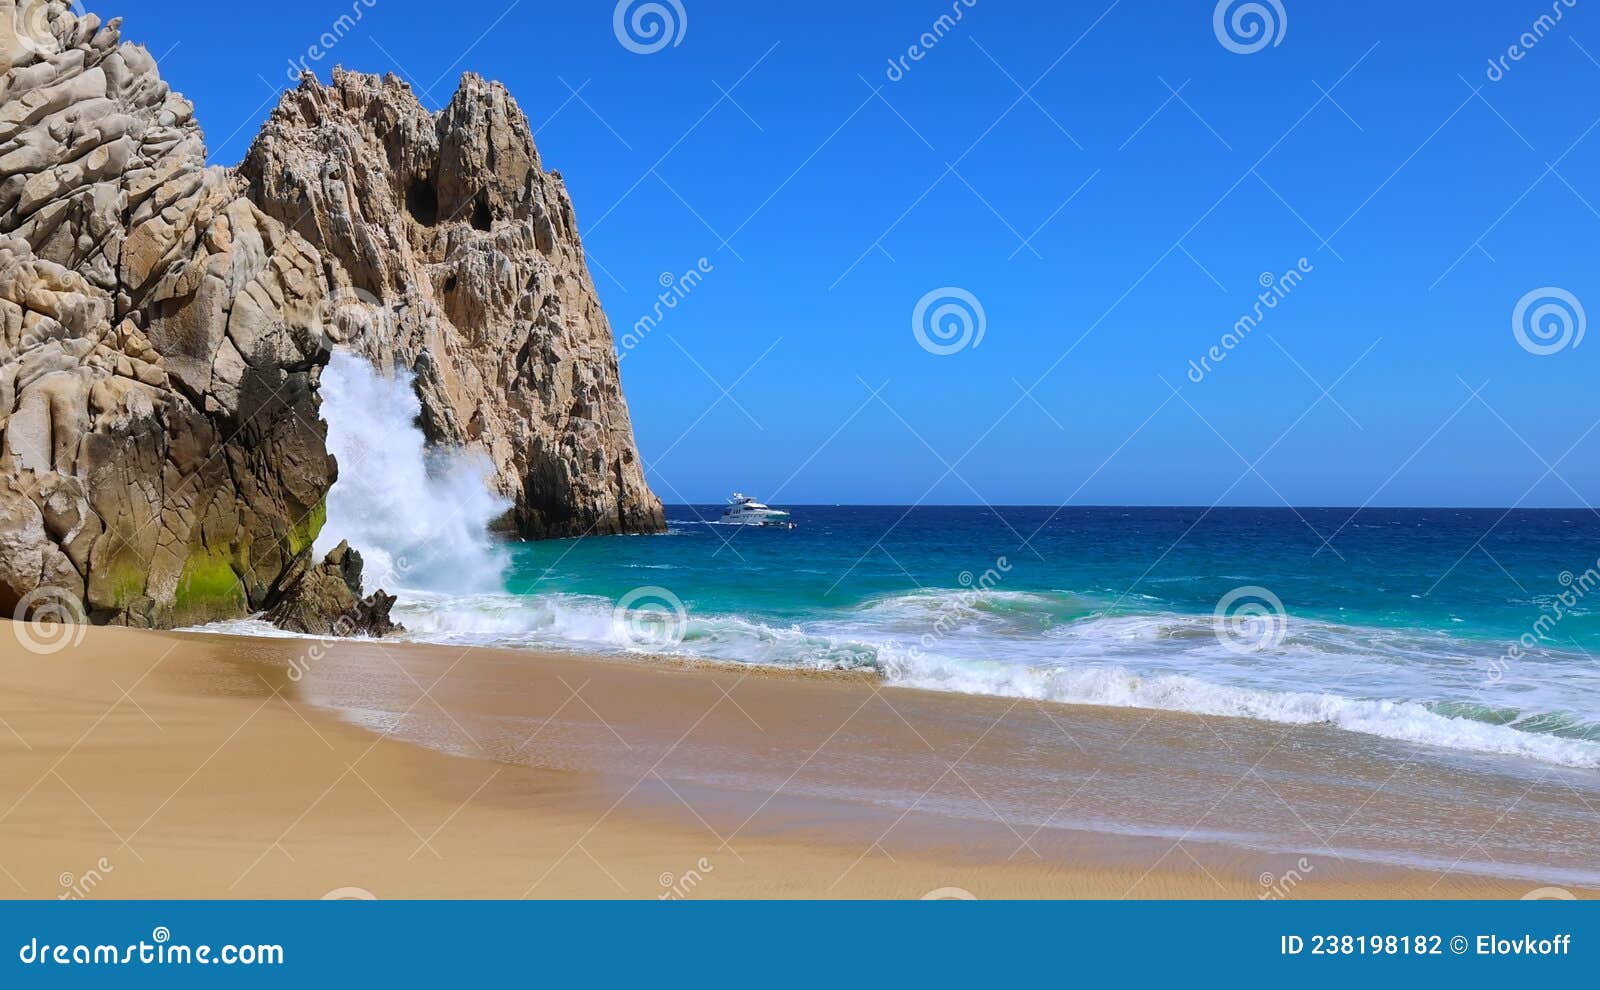 scenic travel destination playa del divorcio, divorce beach located near scenic arch of cabo san lucas